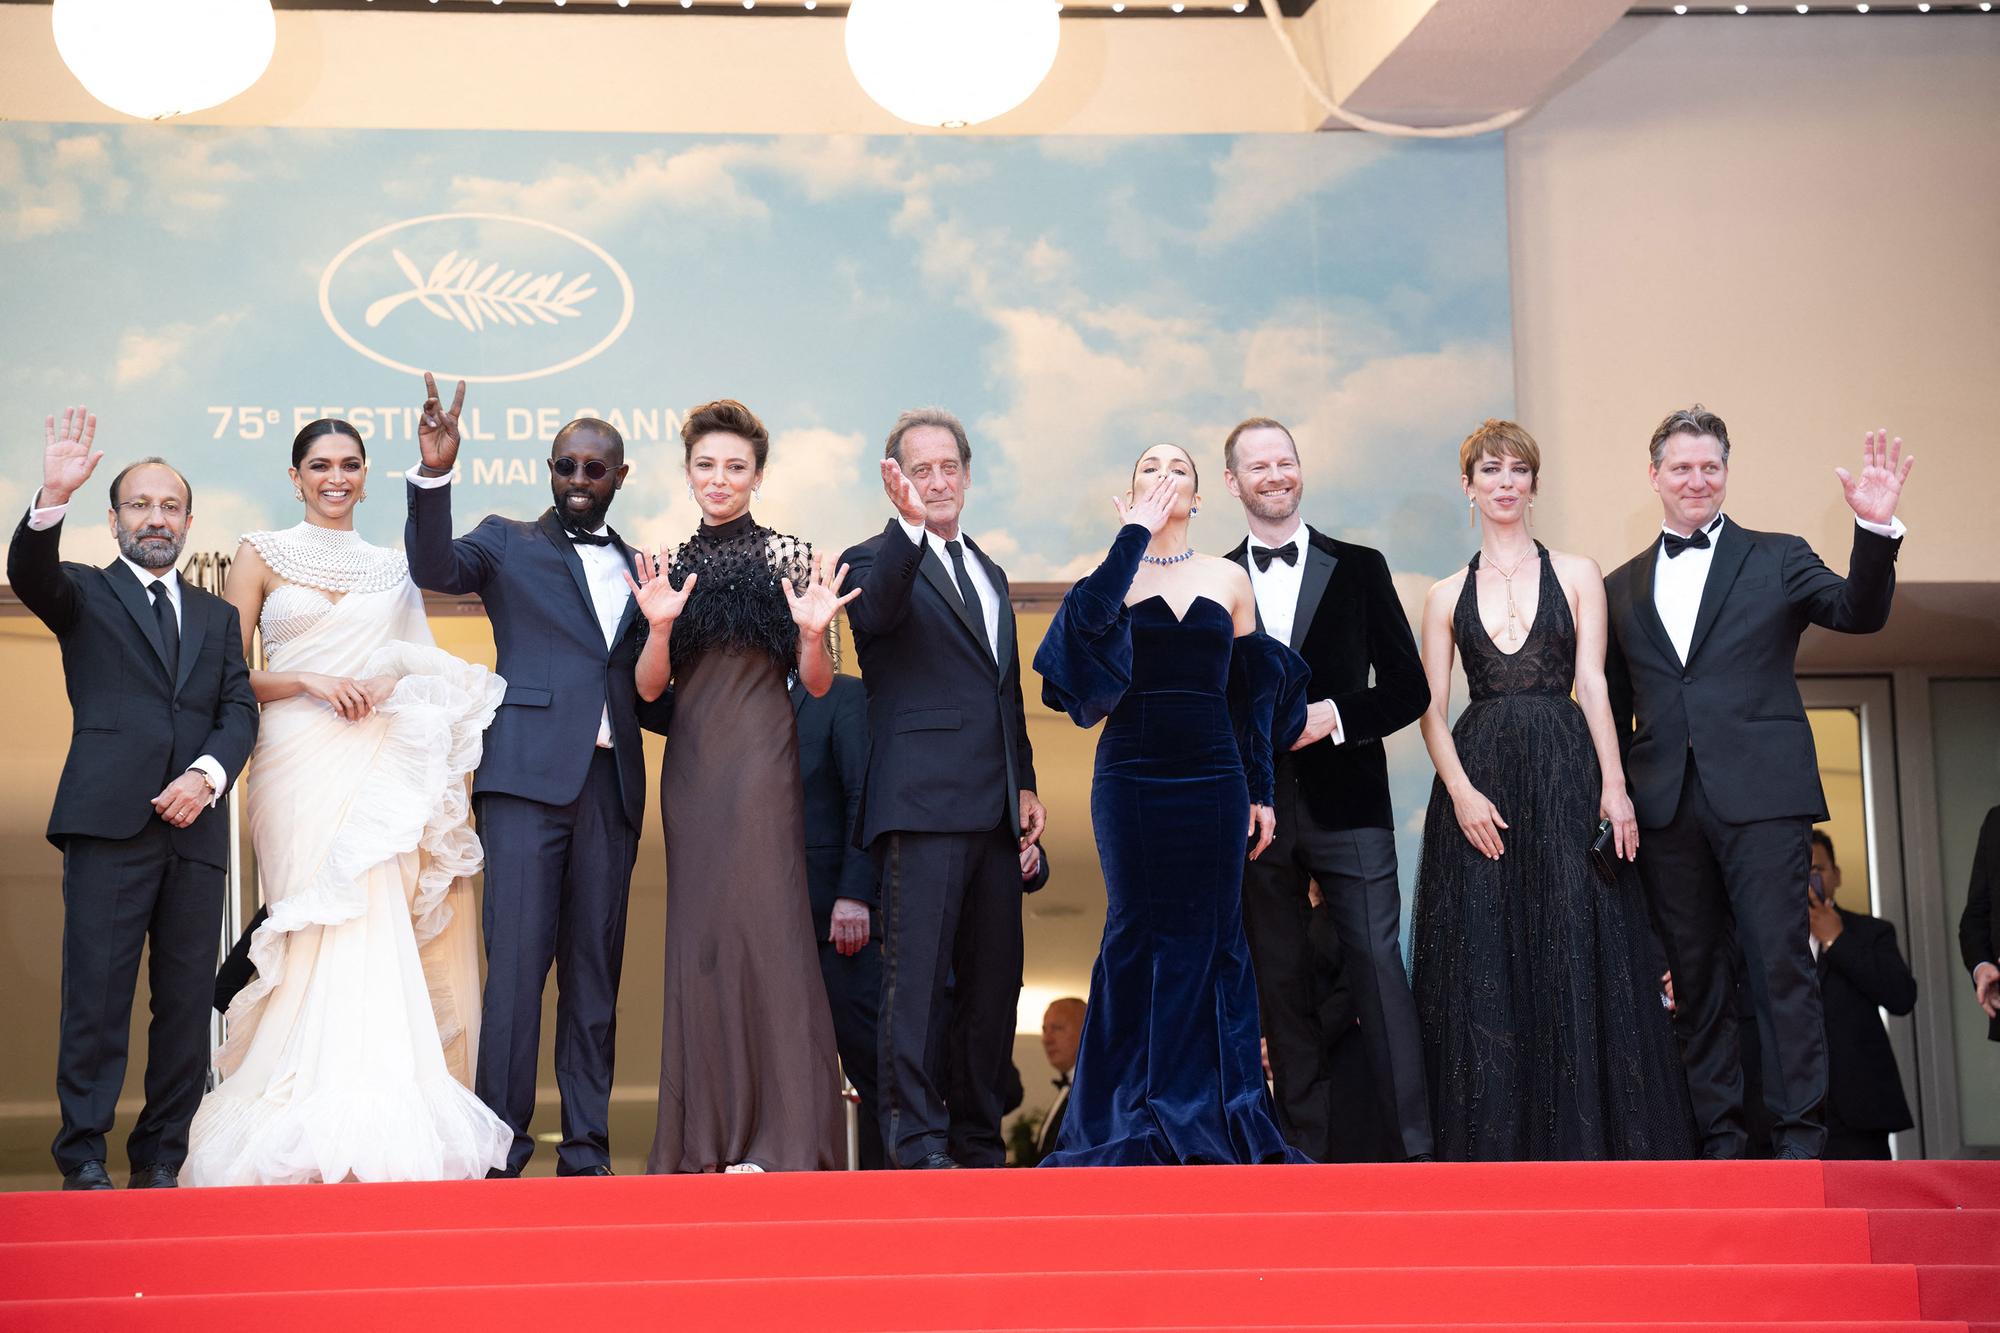 Le jury de la 75e édition du Festival de Cannes. De gauche à droite: Asghar Farhadi, Deepika Padukone, Lady Ly, Jasmin Trinca, Vincent Lindon (président), Noomi Rapace, Joachim Trier, Rebecca Hall, Jeff Nichols